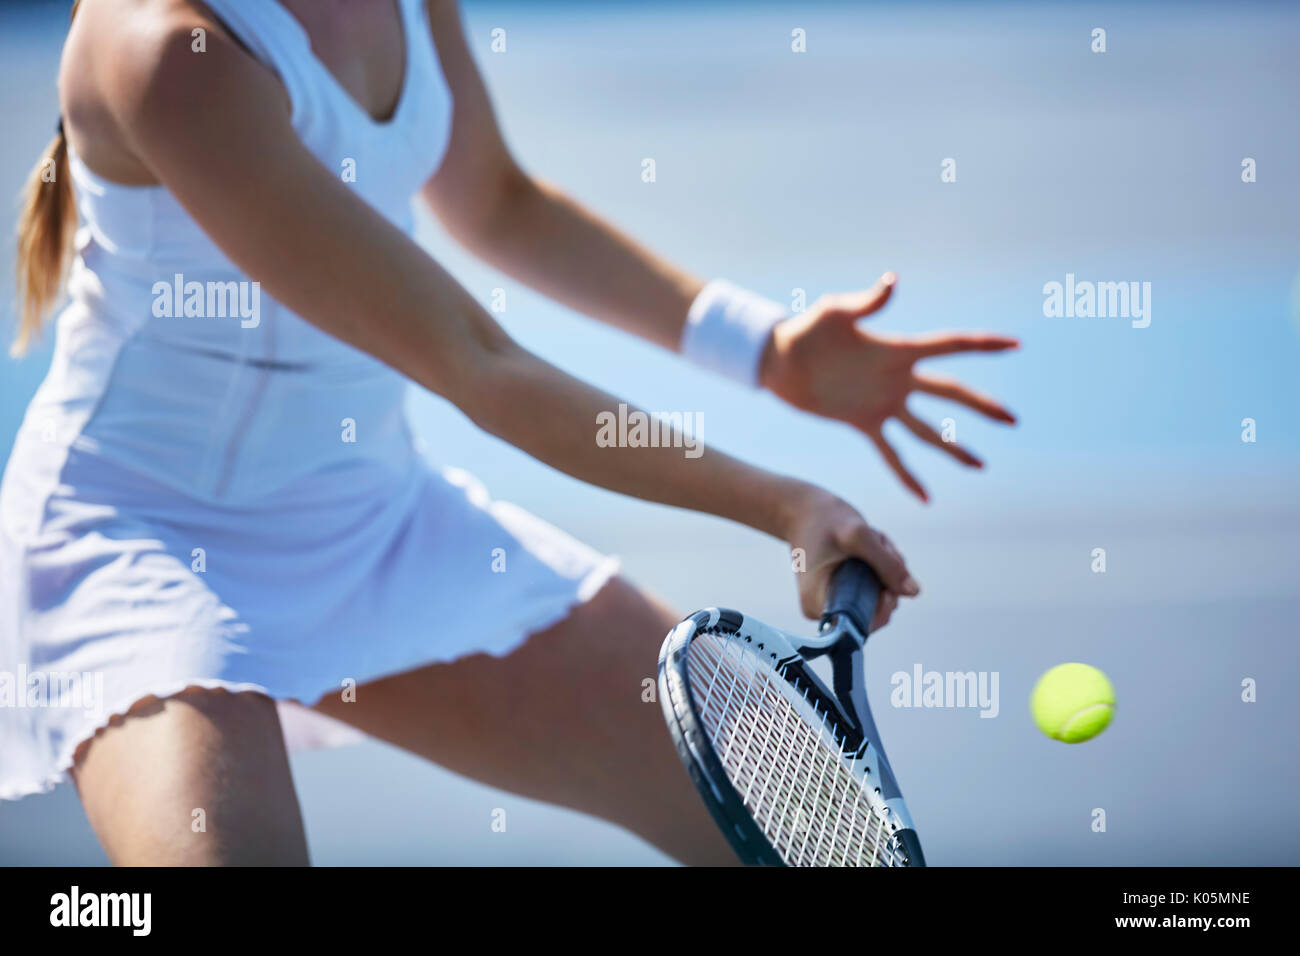 Tennis player jouer au tennis, holding tennis racket Banque D'Images